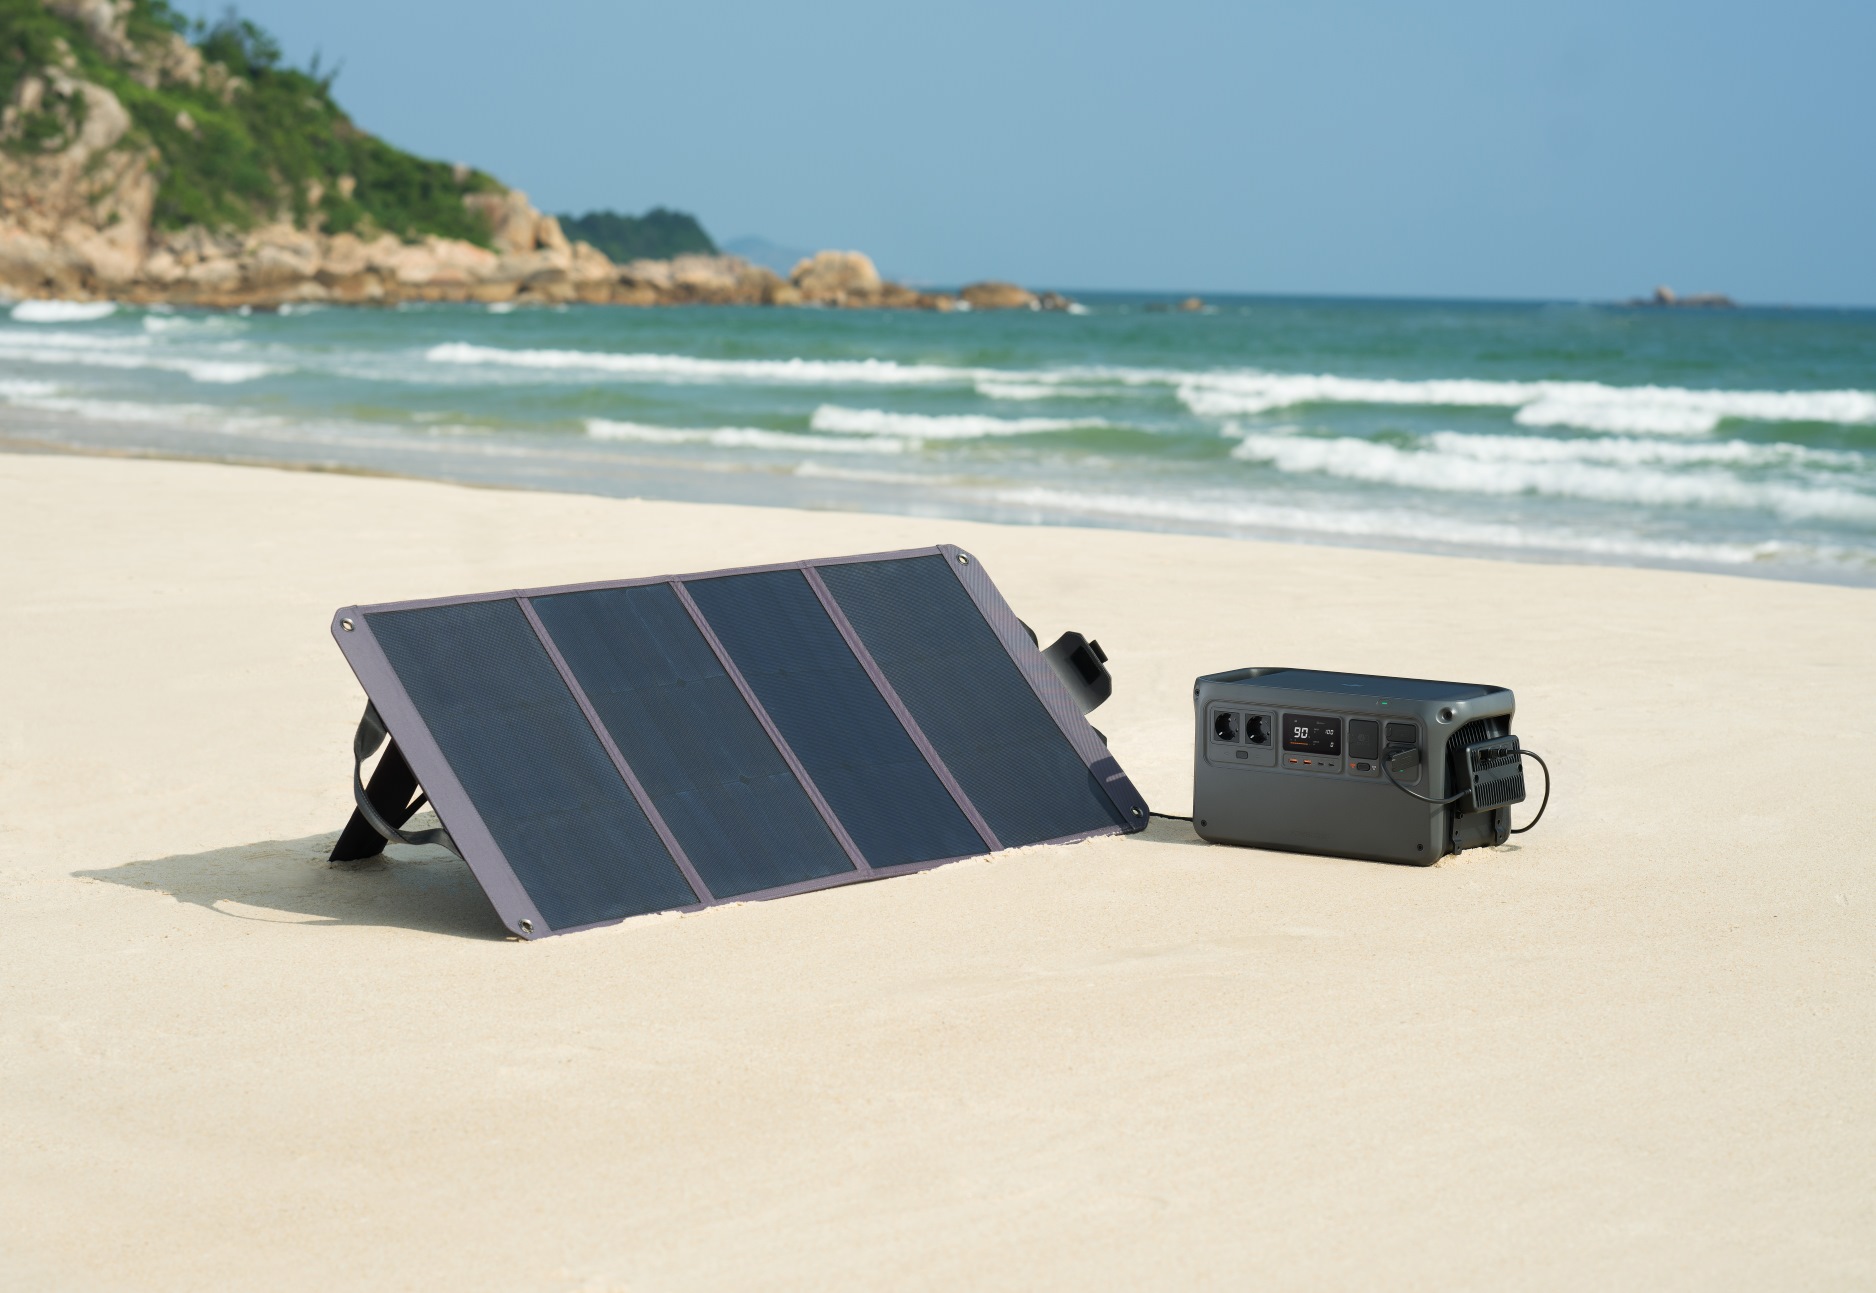 DJI Stacji zasilania Power 1000 na plaży z panelem solarnym